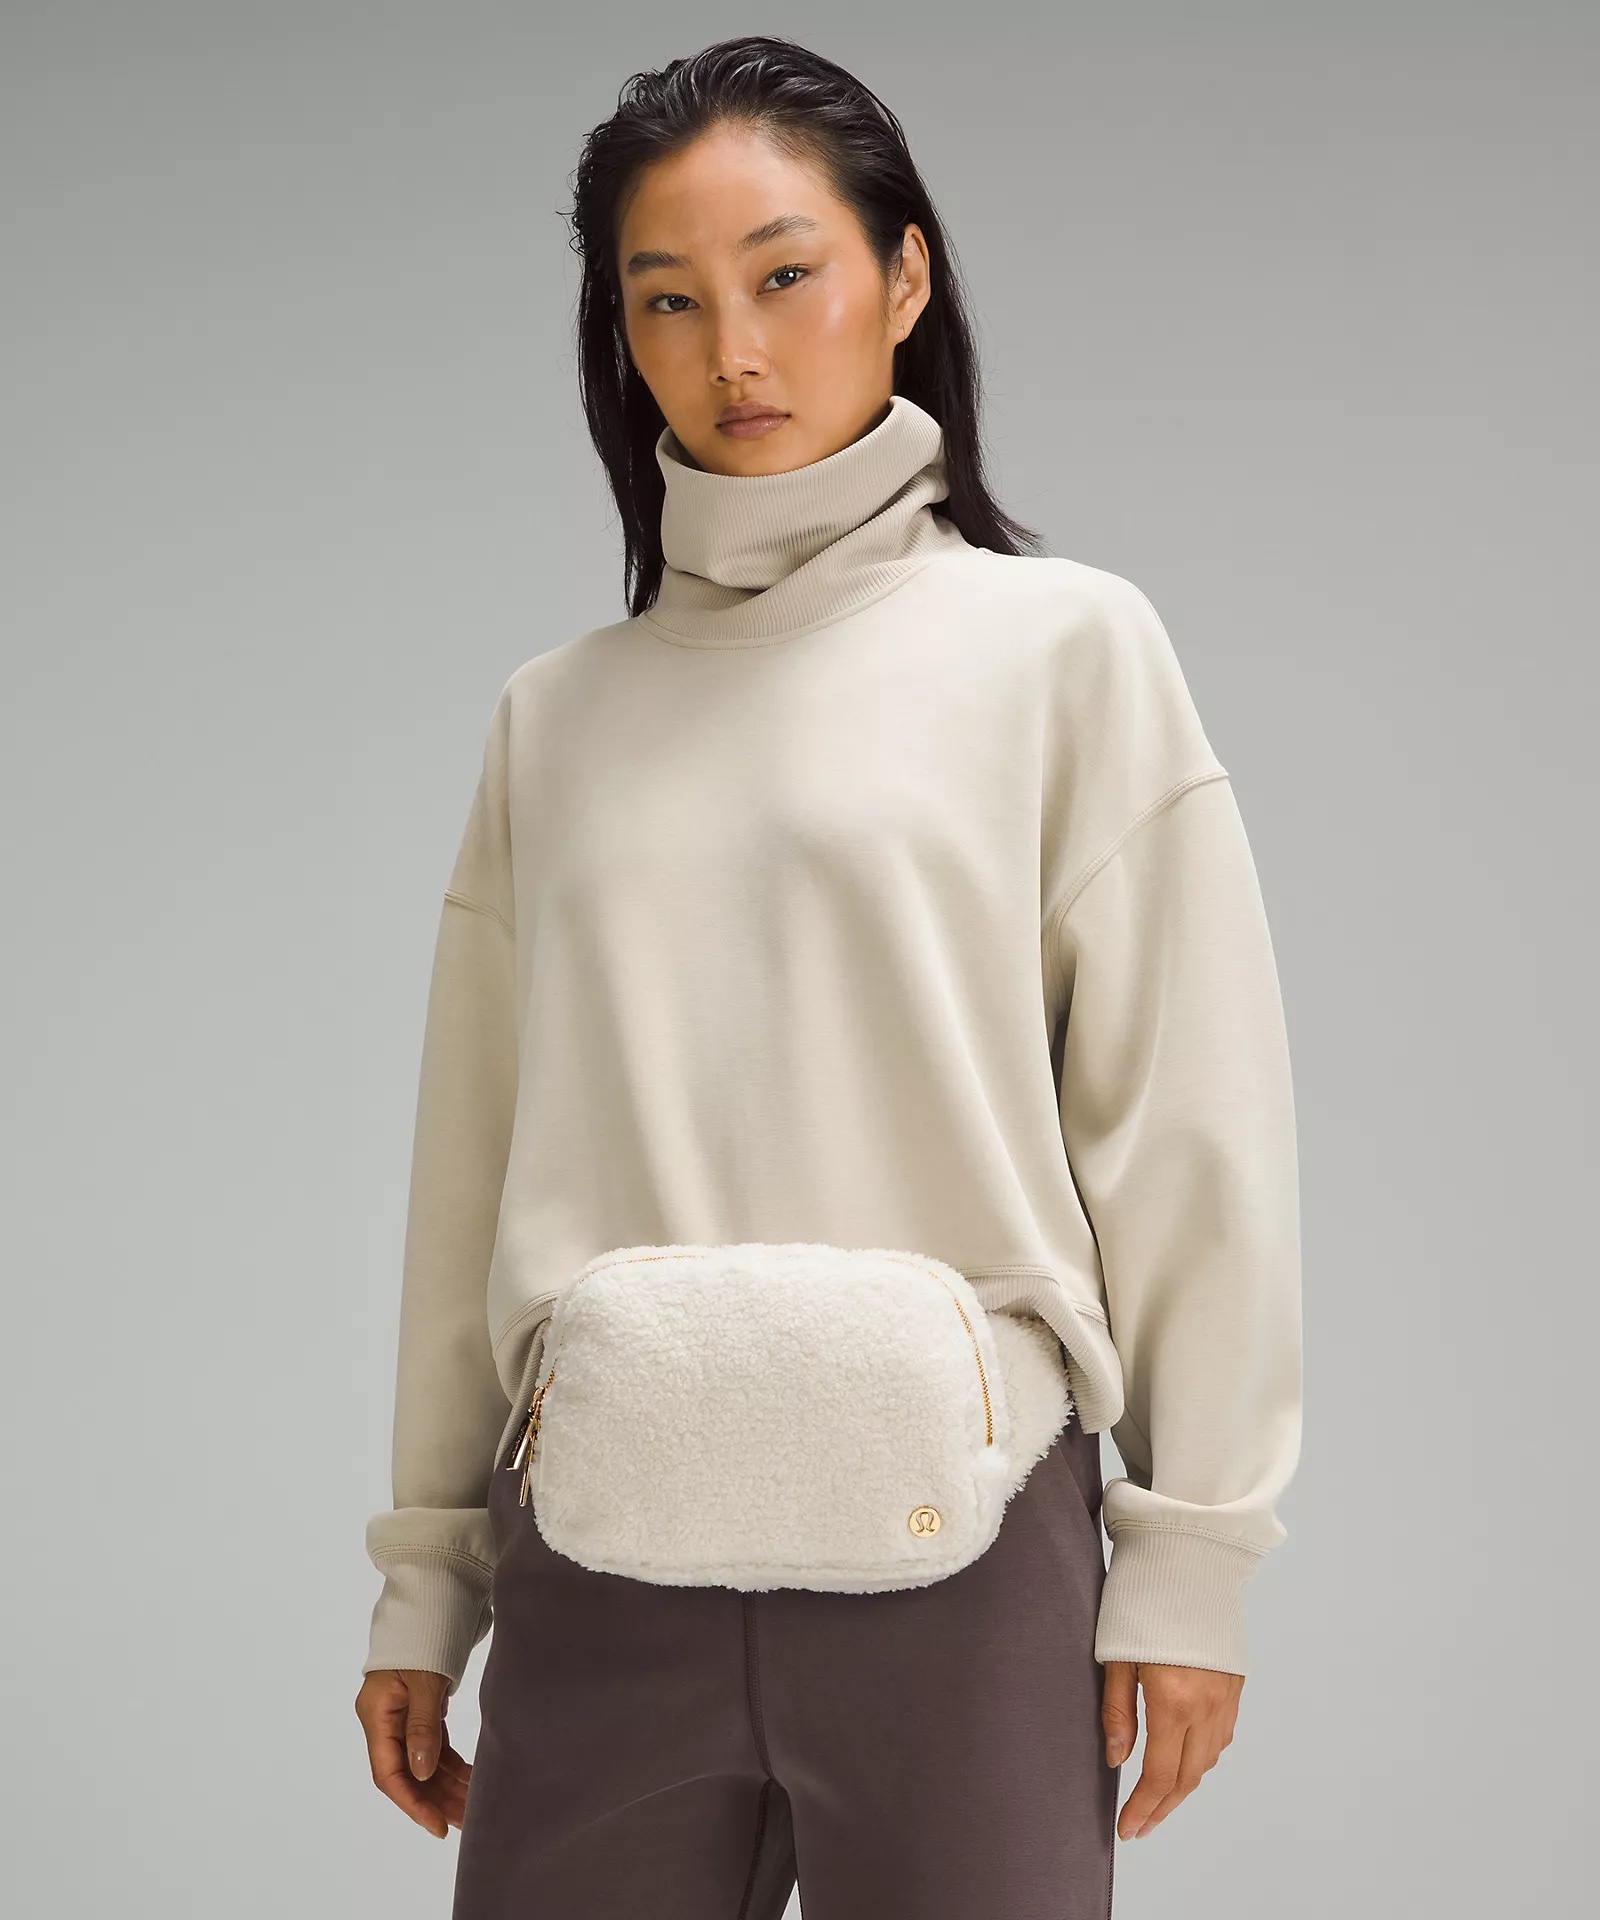 Sherling belt bag from lululemon